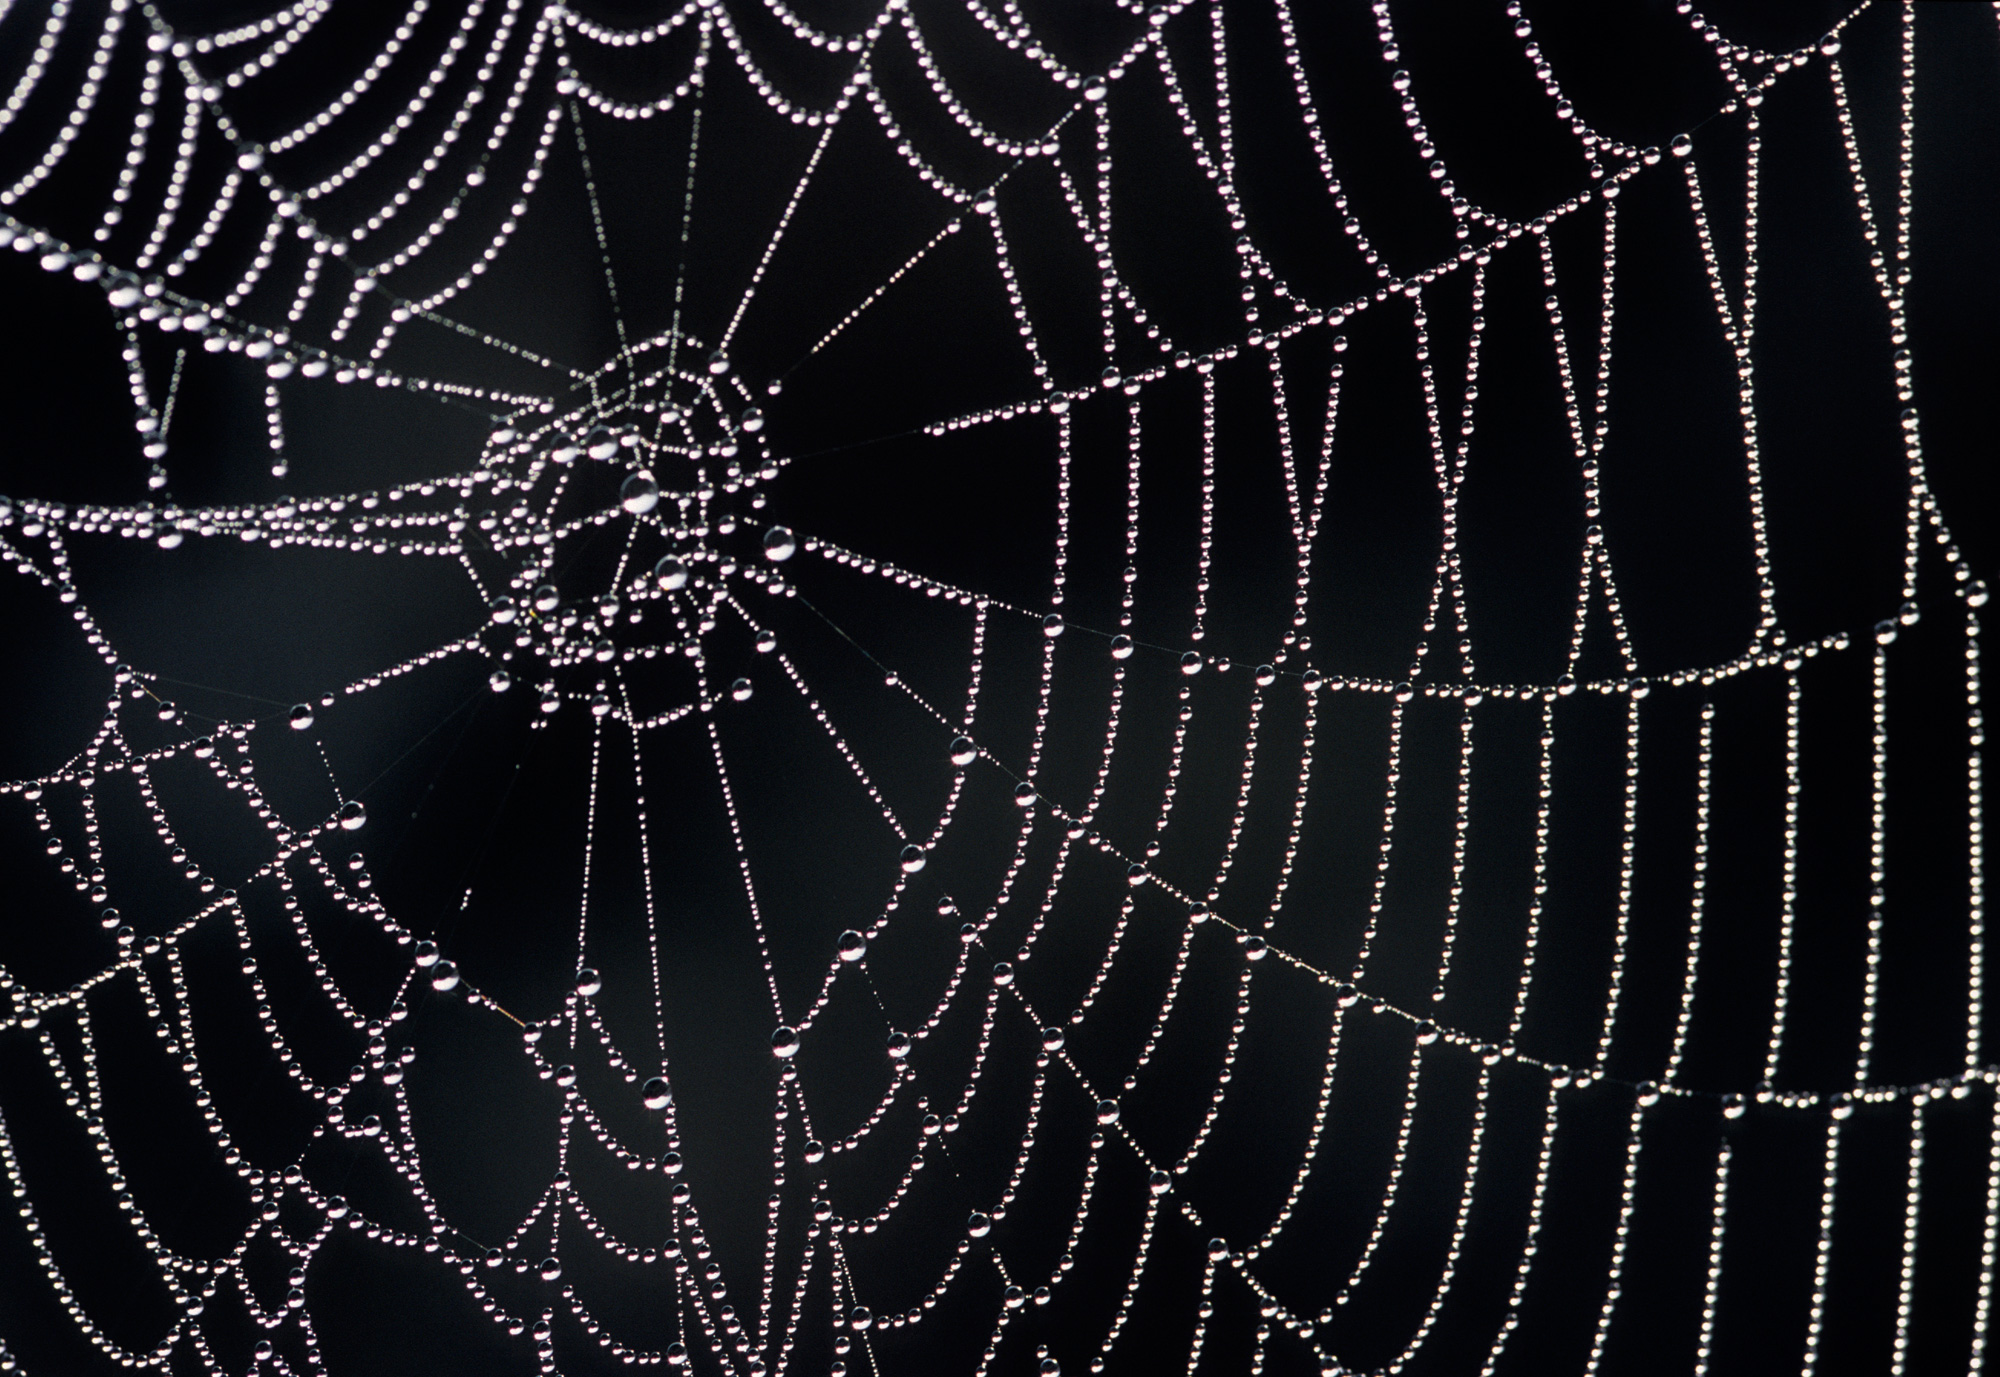 How spider webs achieve their strength | MIT News